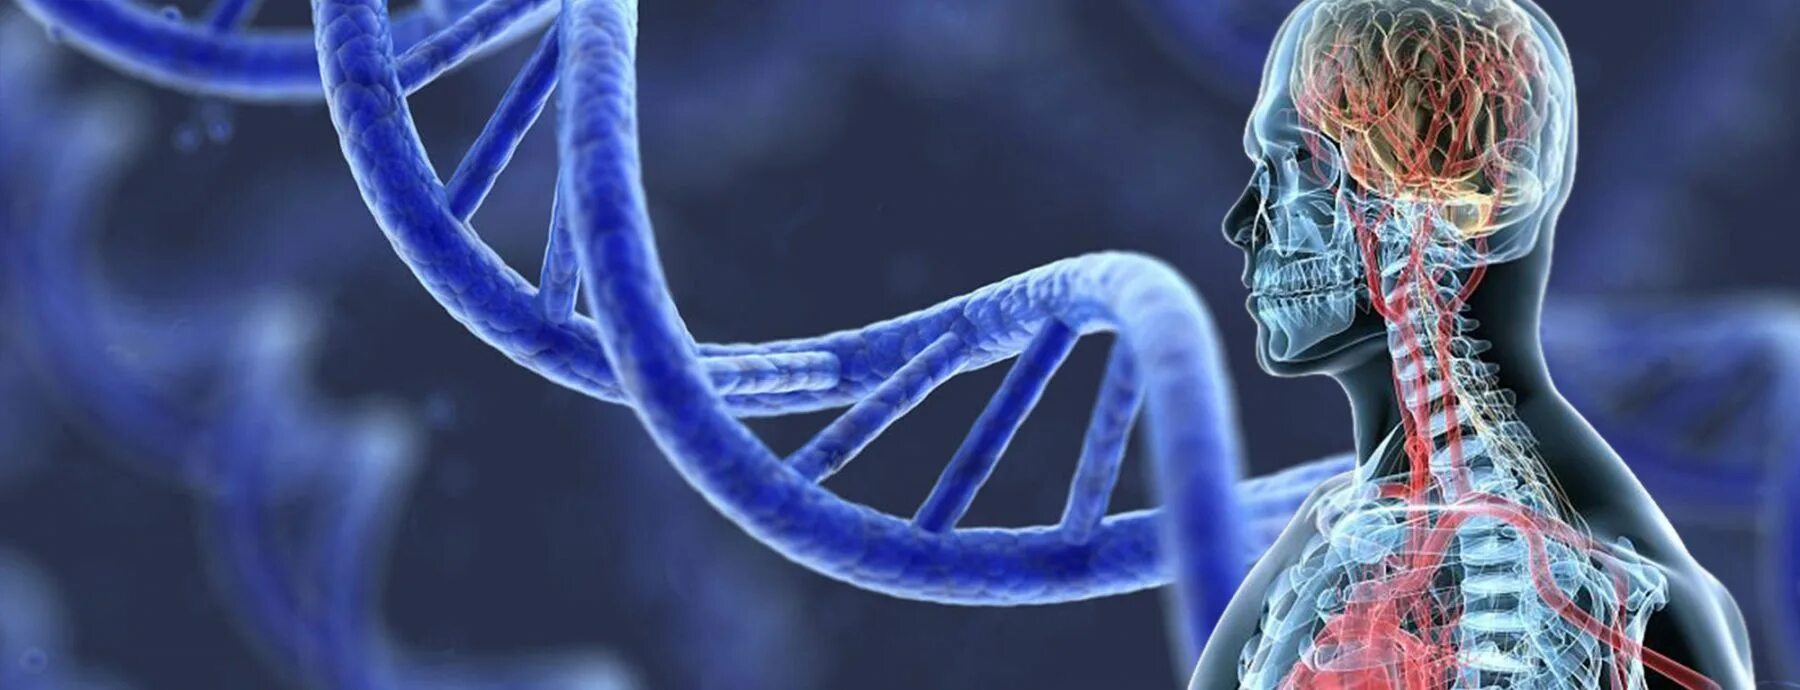 ДНК человека. ДНК бессмертие. Биологическое бессмертие. Человек из ДНК. Reduce disease